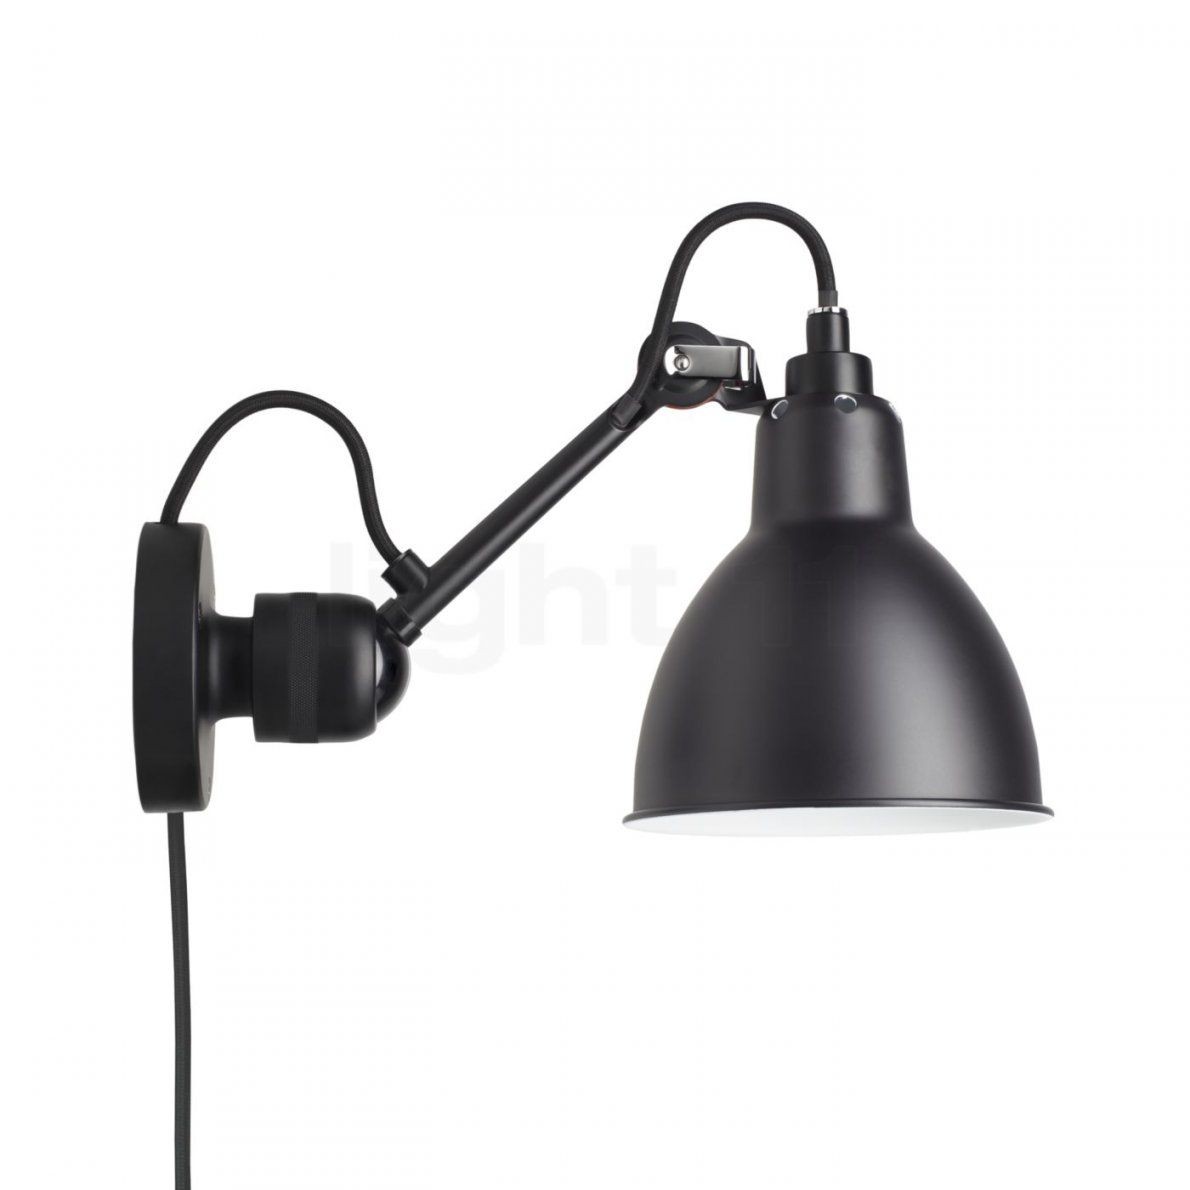 Dcw Lampe Gras No 304 Ca Wandleuchte Schwarz  Light11 von Wandlampen Mit Schalter Und Kabel Bild